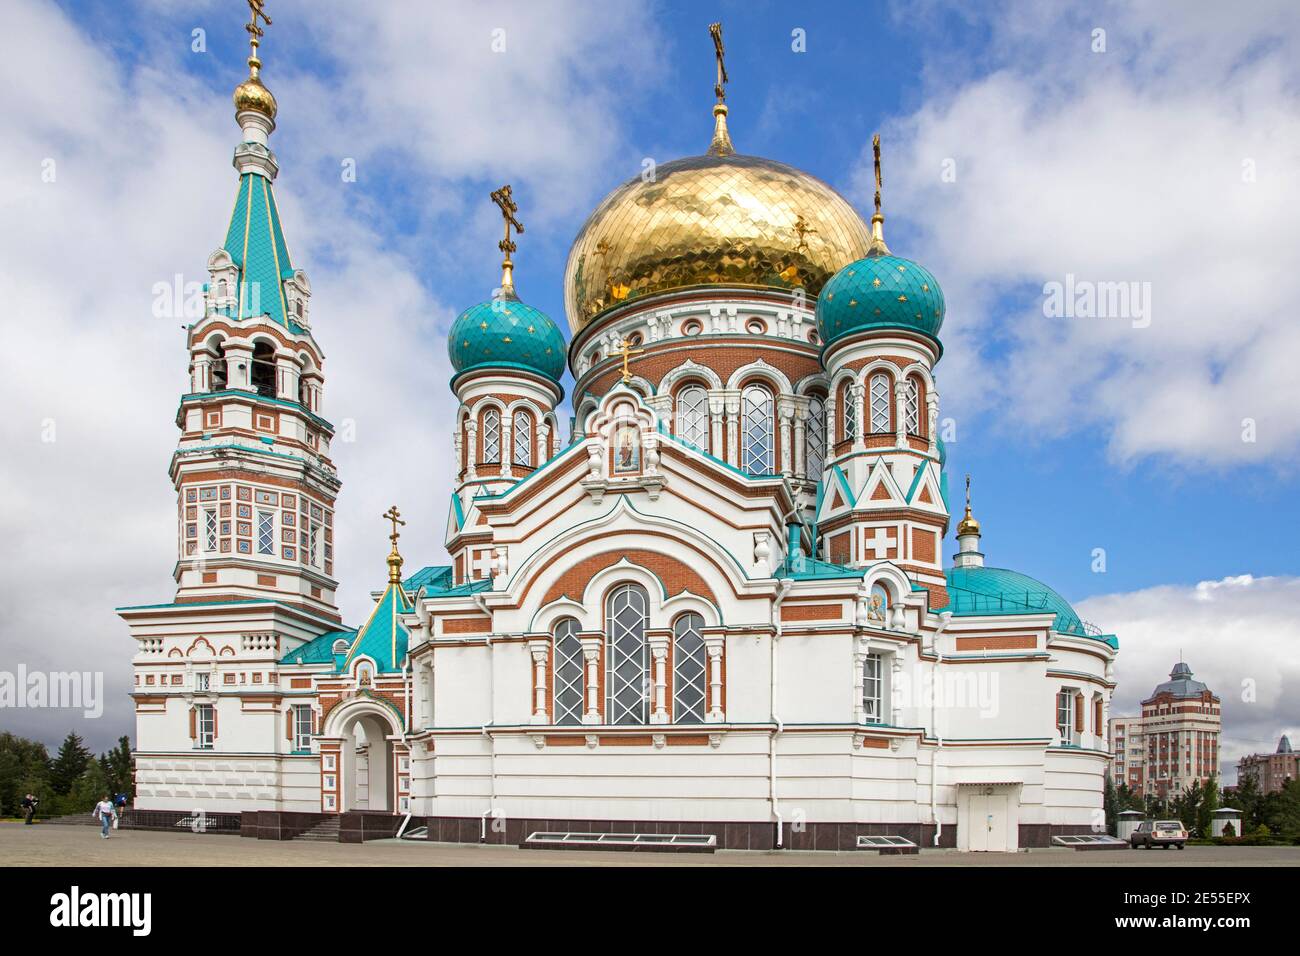 Die farbenfrohe Dormition Kathedrale in Omsk, eine der größten Kirchen in Sibirien mit russischen und byzantinischen mittelalterlichen architektonischen Elementen, Russland Stockfoto